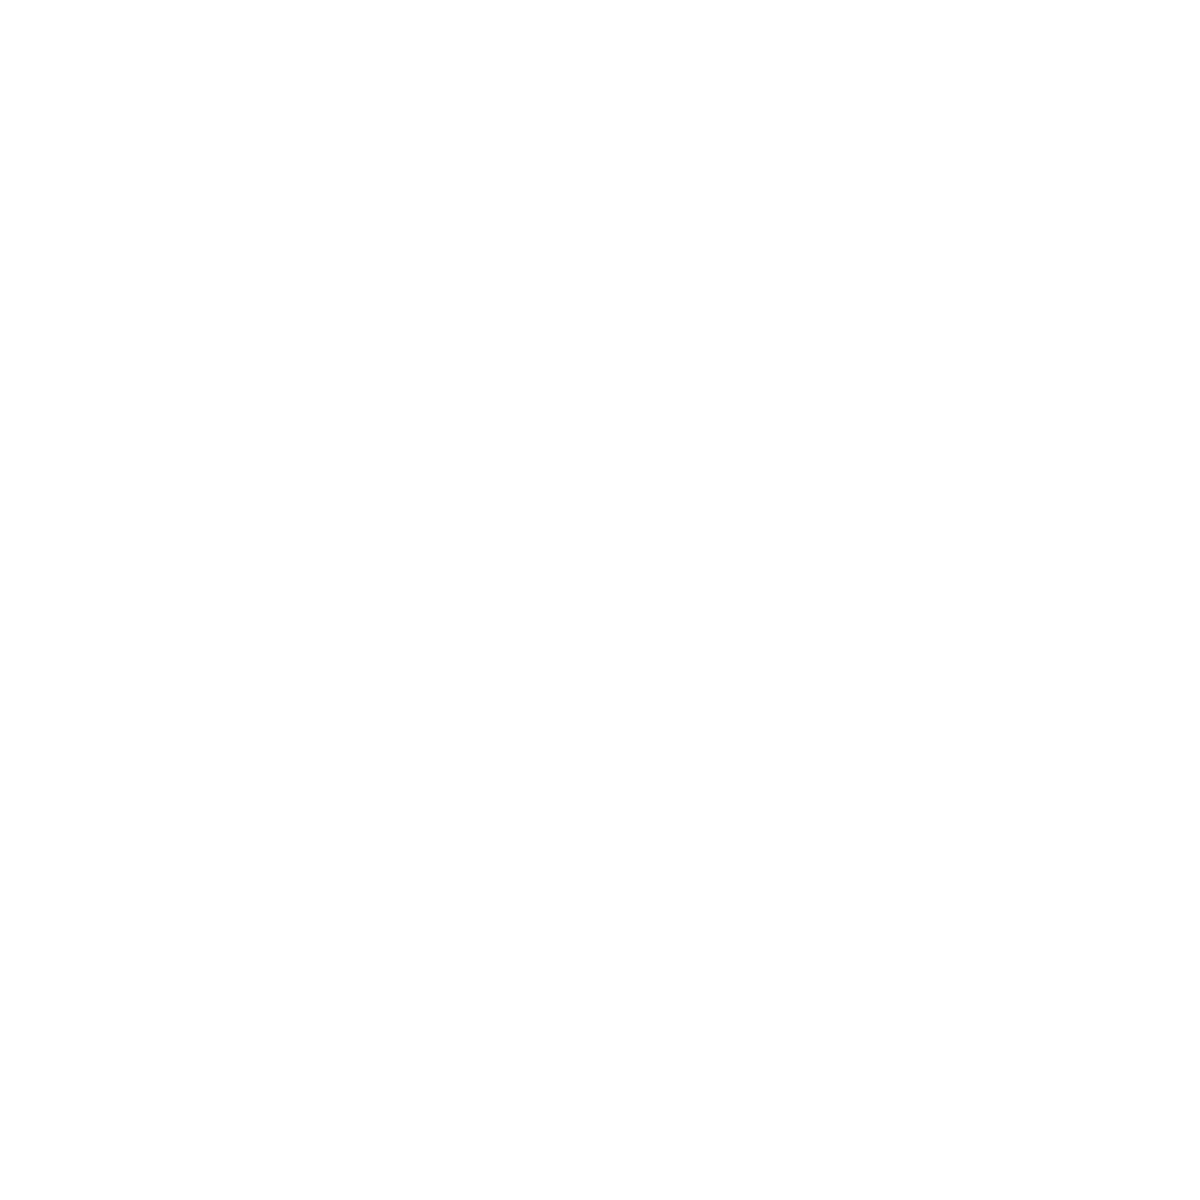 Uufdmedia.png